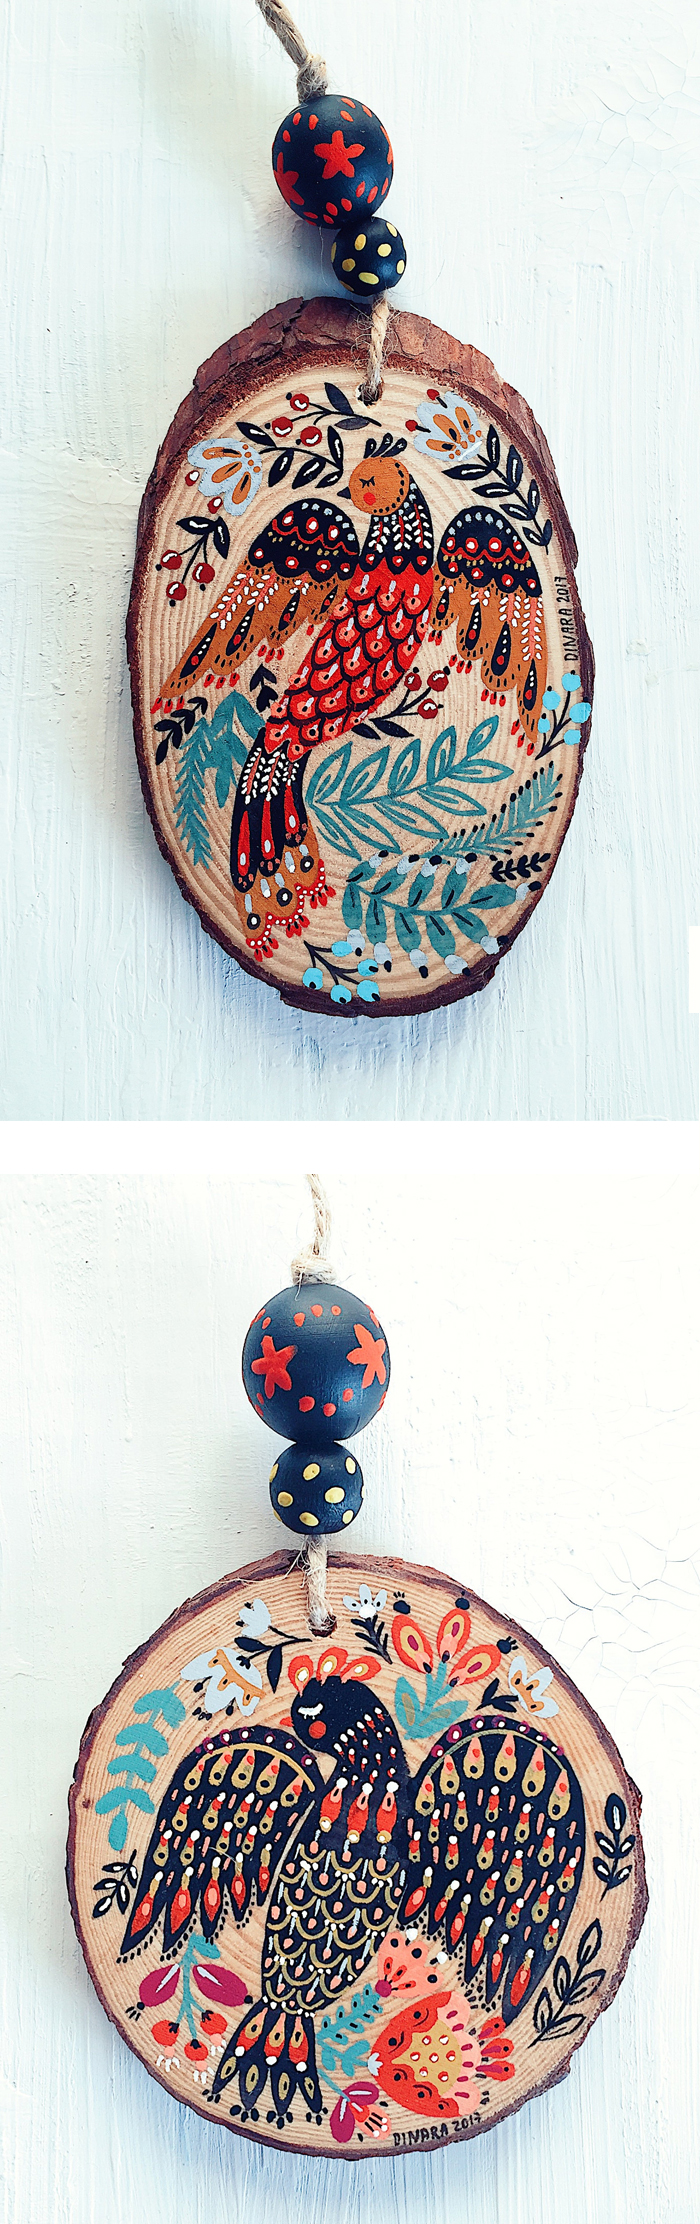 Holiday ornaments by Dinara Mirtalipova